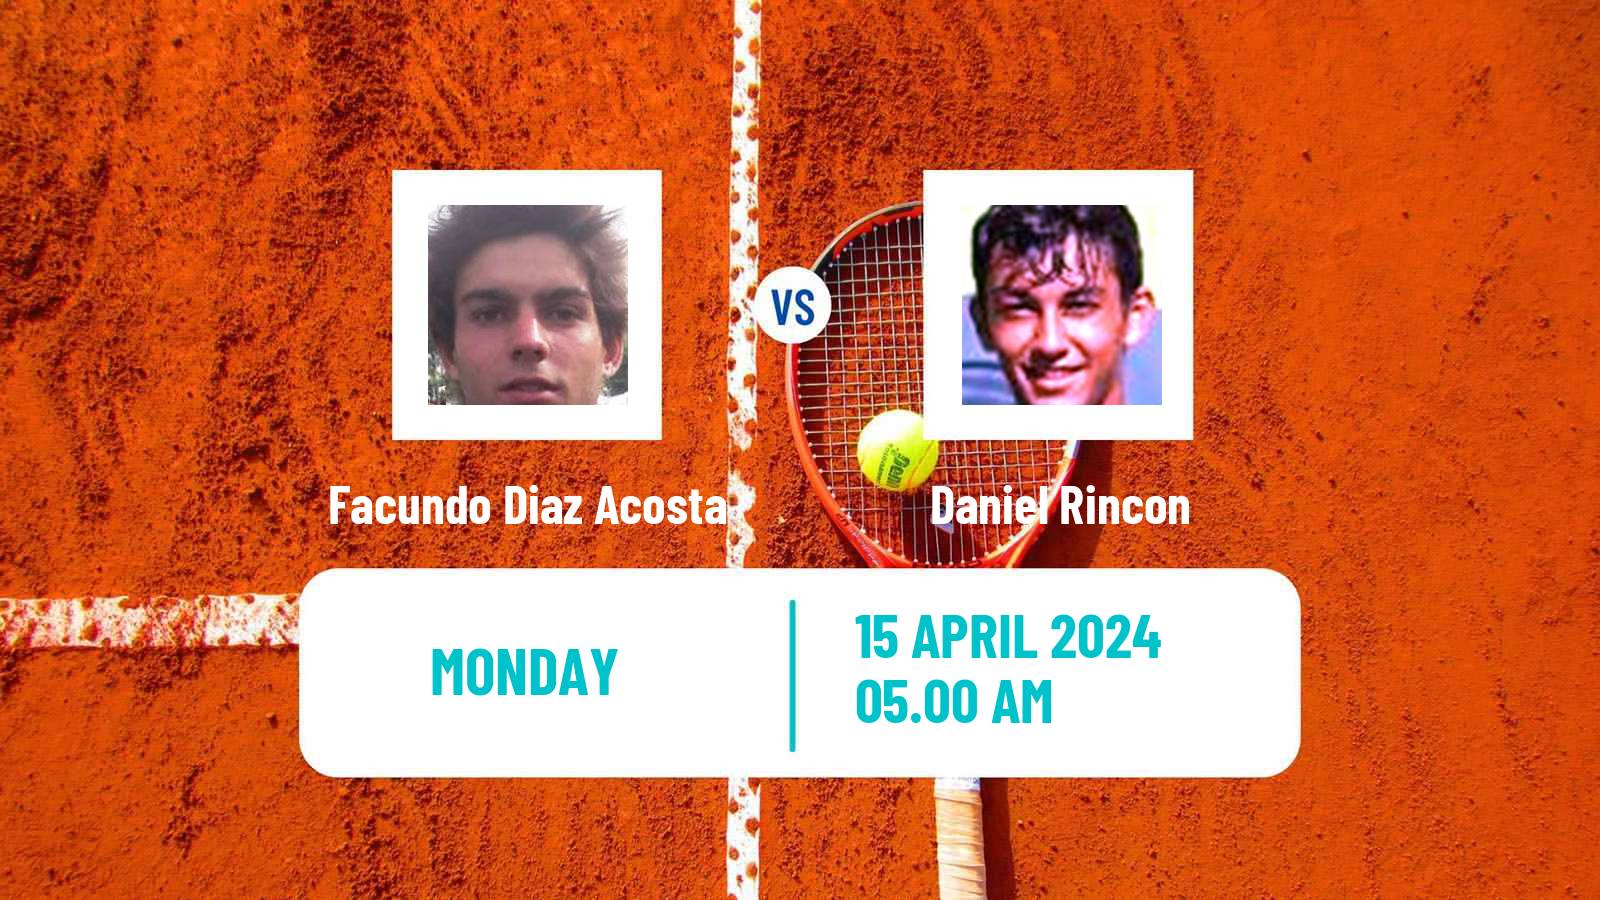 Tennis ATP Barcelona Facundo Diaz Acosta - Daniel Rincon